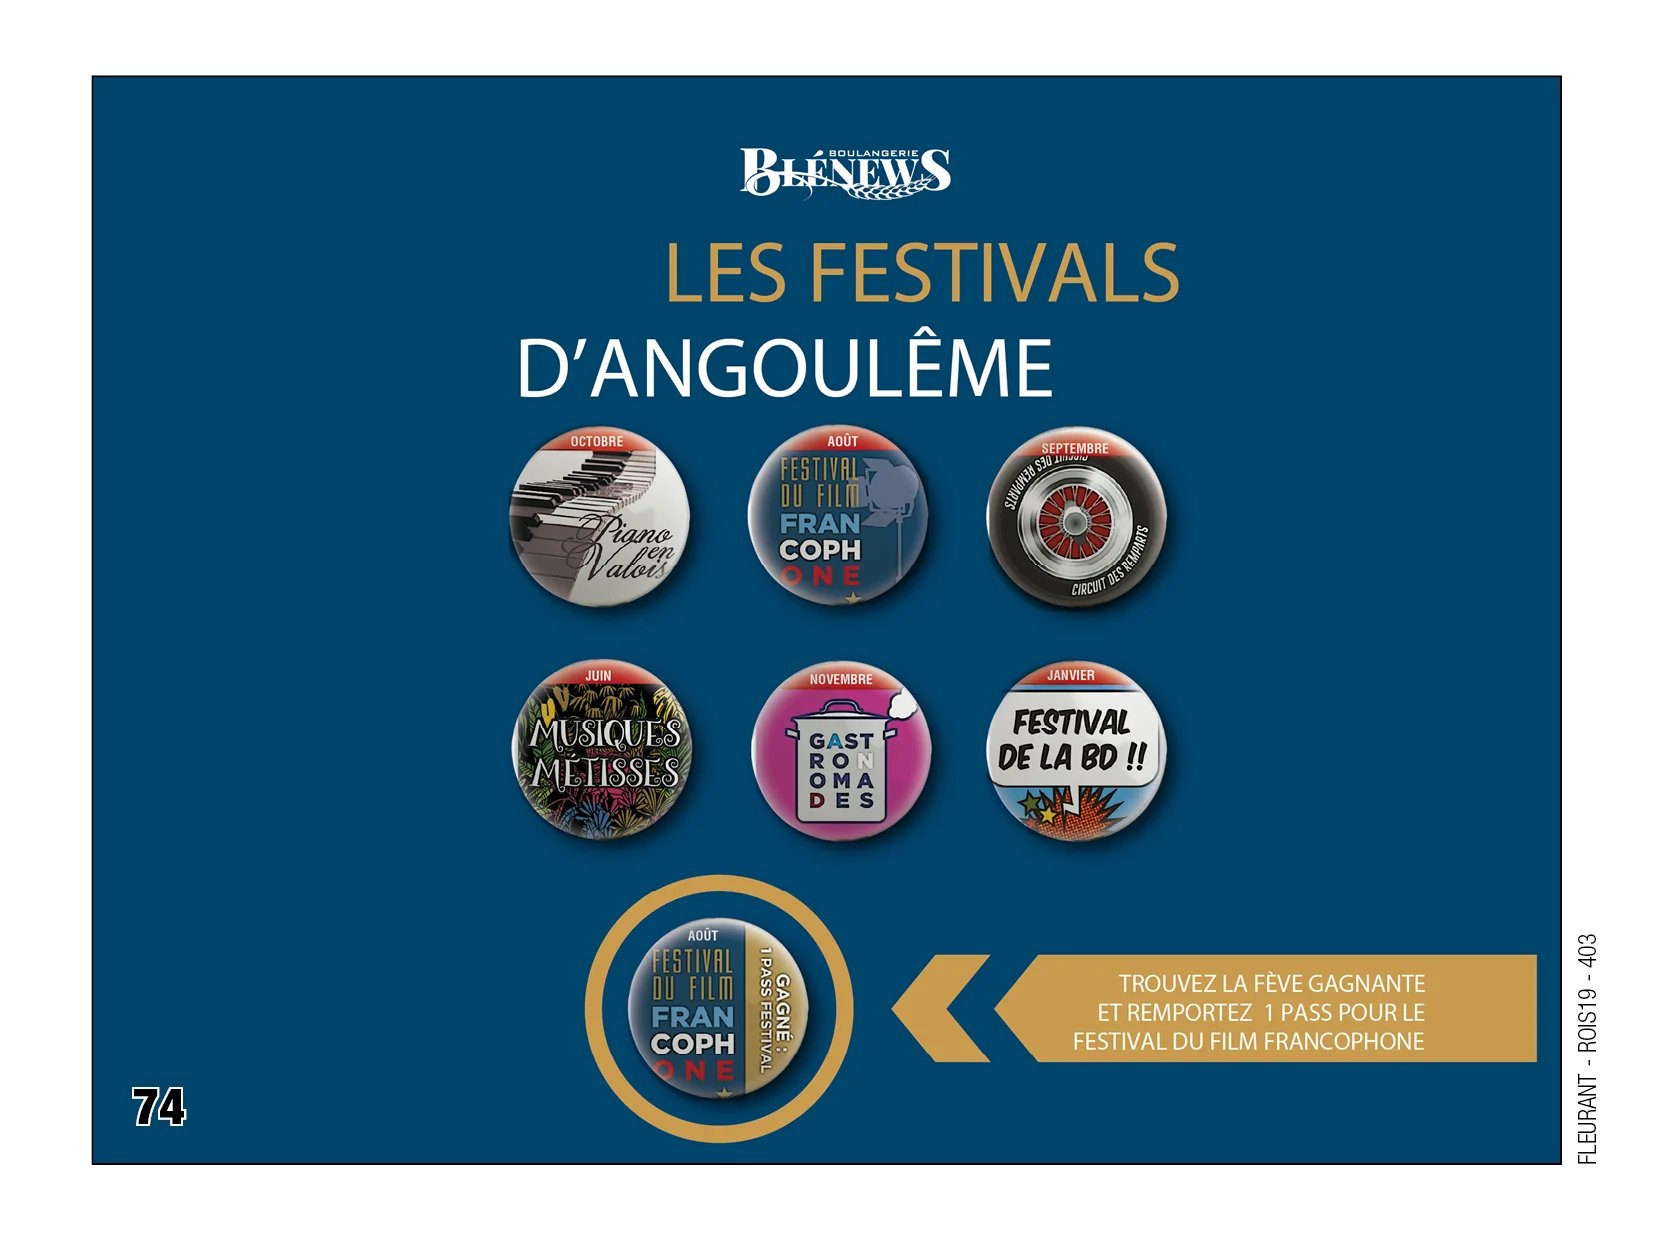 Fèves personnalisées blenews festivals angouleme